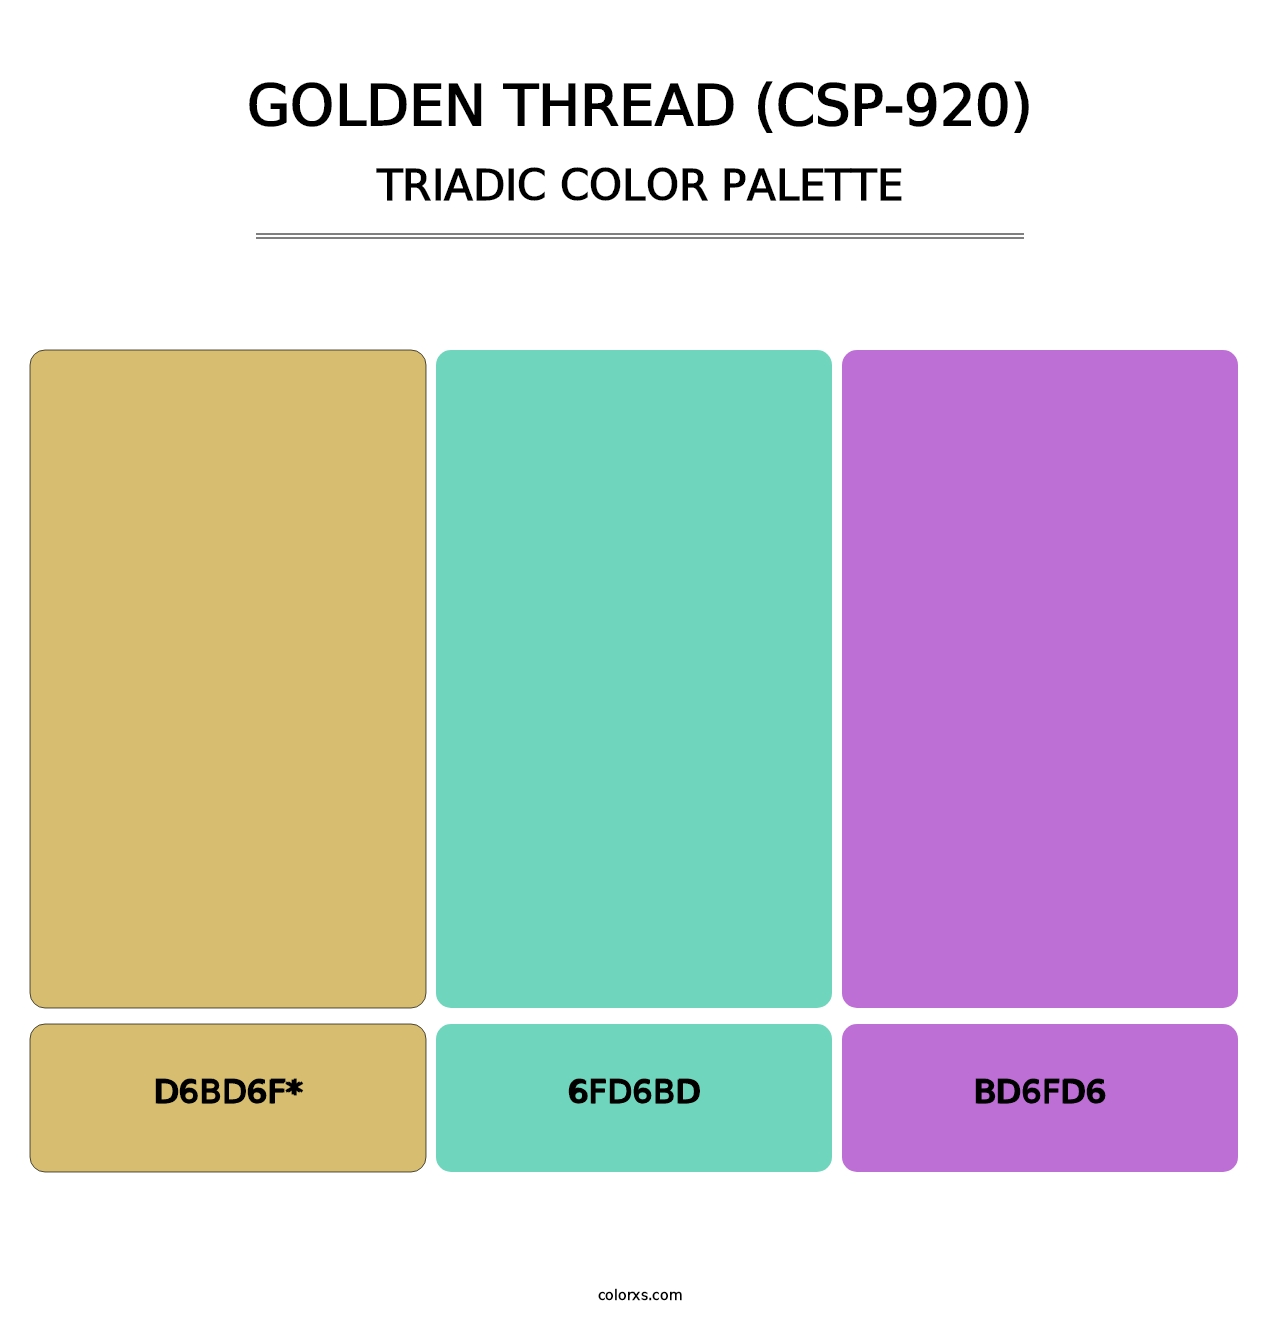 Golden Thread (CSP-920) - Triadic Color Palette